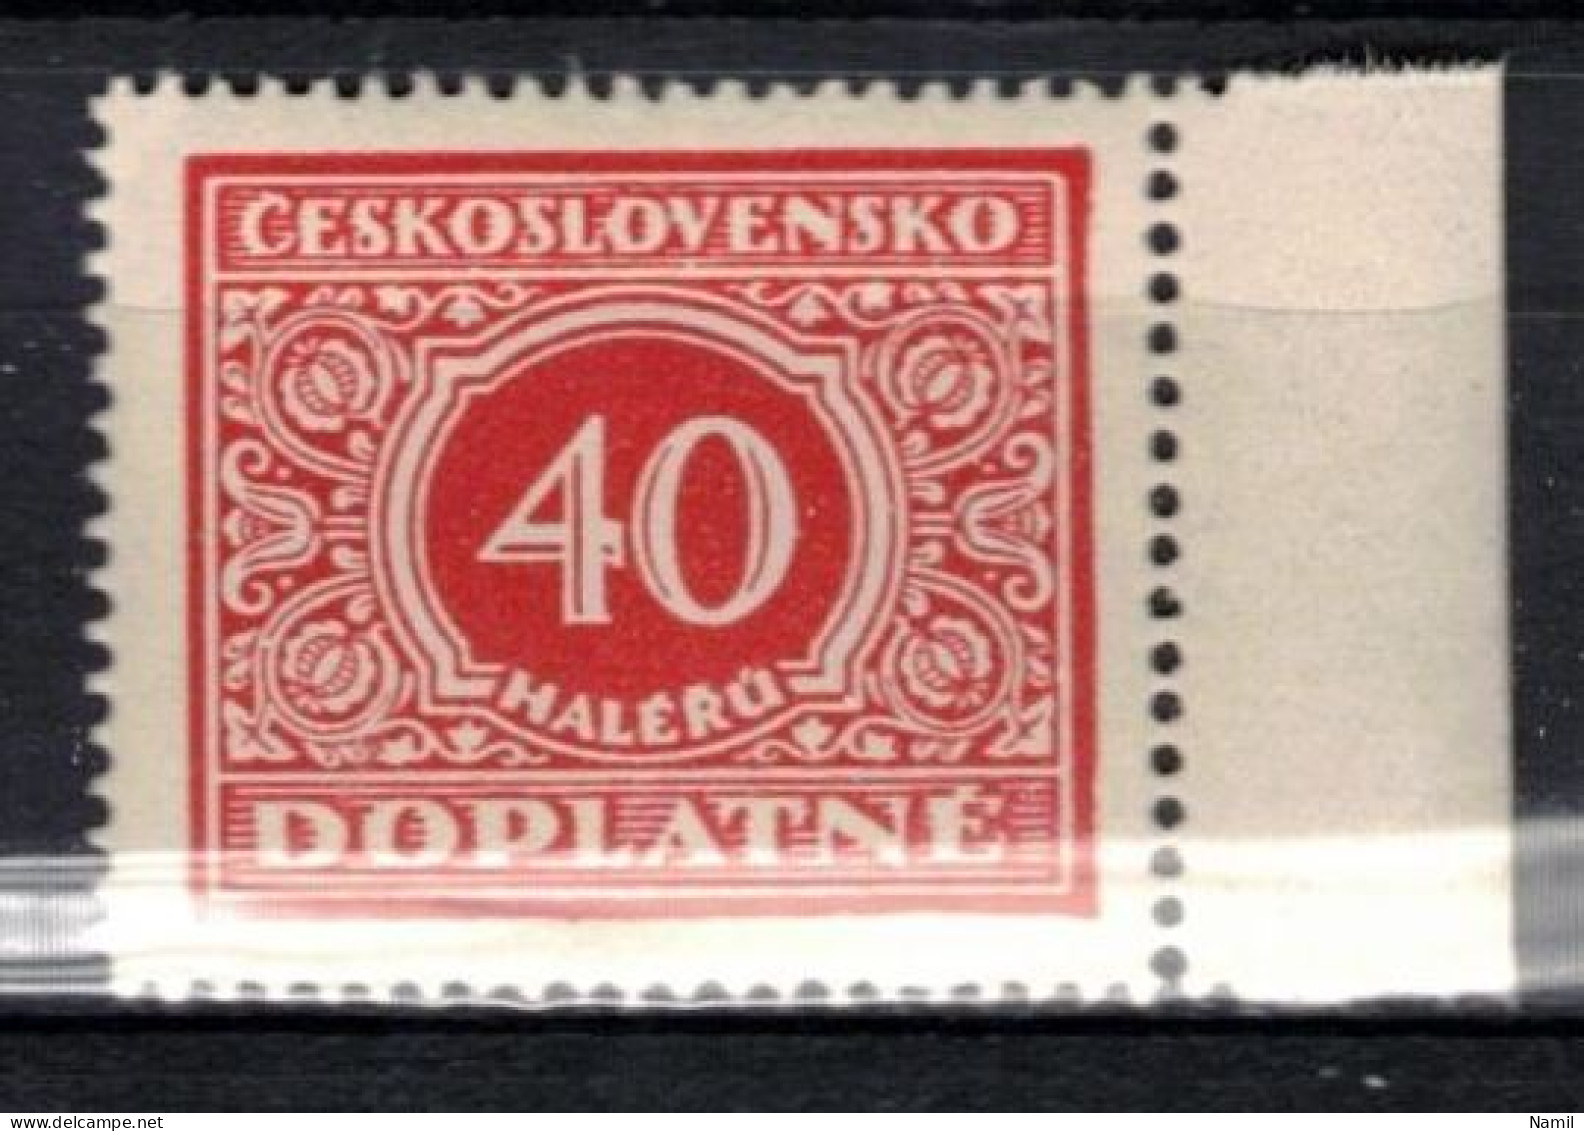 ** Tchécoslovaquie 1928 Mi P 59 (Yv TT 55), (MNH)** Varieté Position 80 - Variétés Et Curiosités